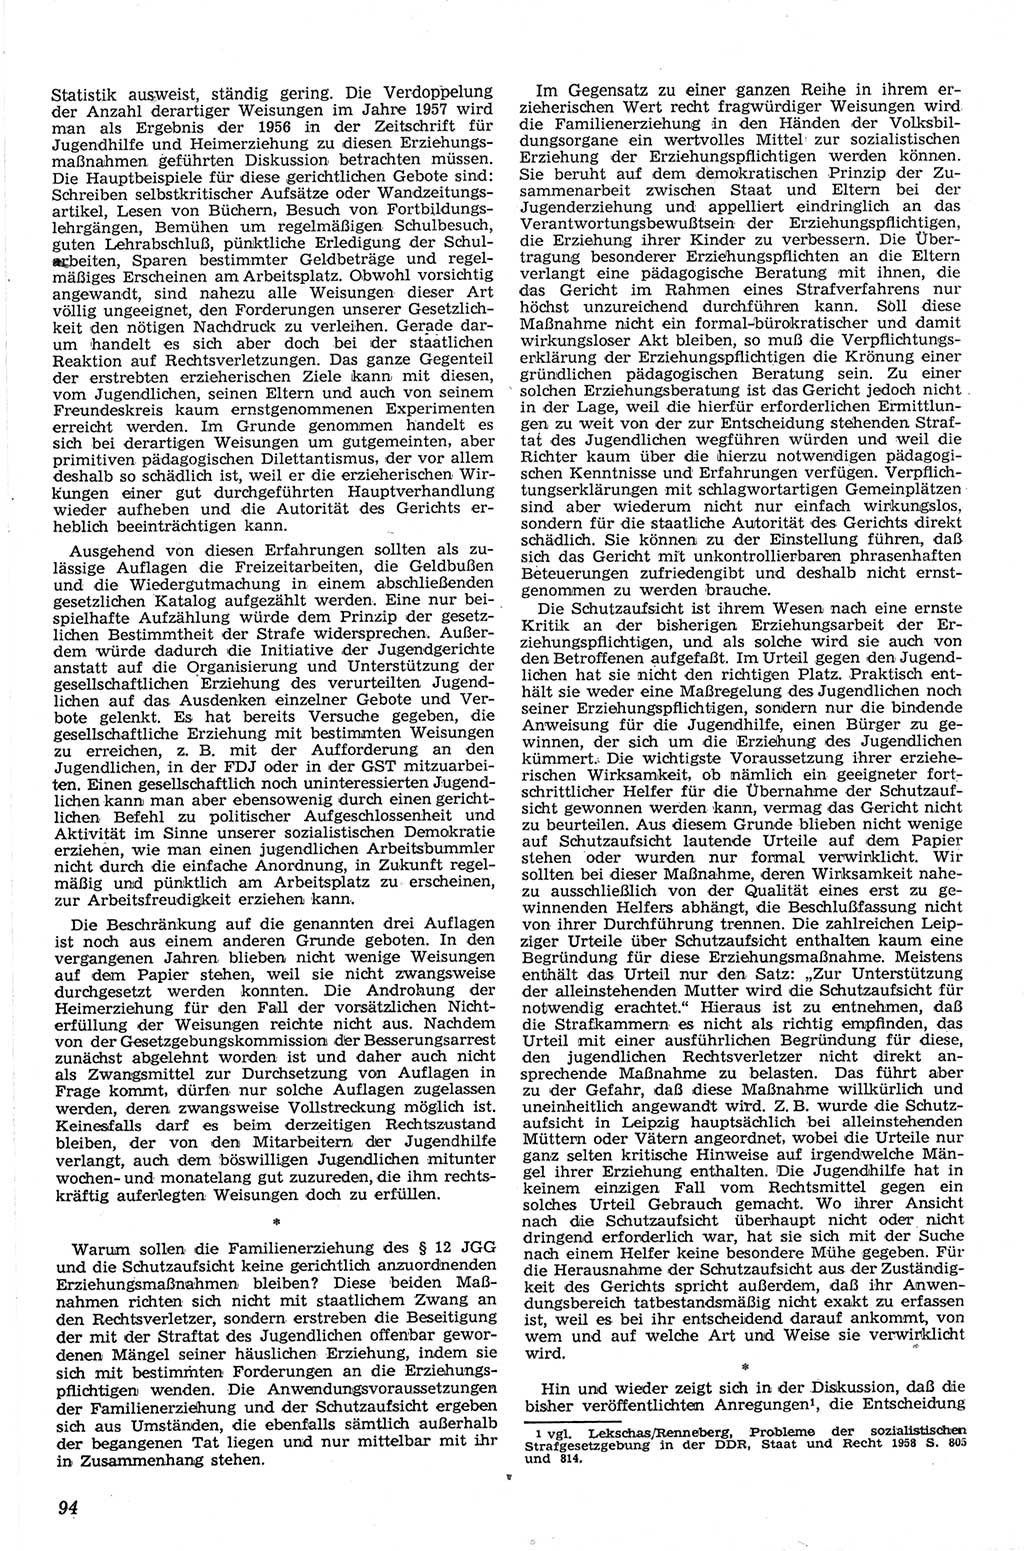 Neue Justiz (NJ), Zeitschrift für Recht und Rechtswissenschaft [Deutsche Demokratische Republik (DDR)], 13. Jahrgang 1959, Seite 94 (NJ DDR 1959, S. 94)